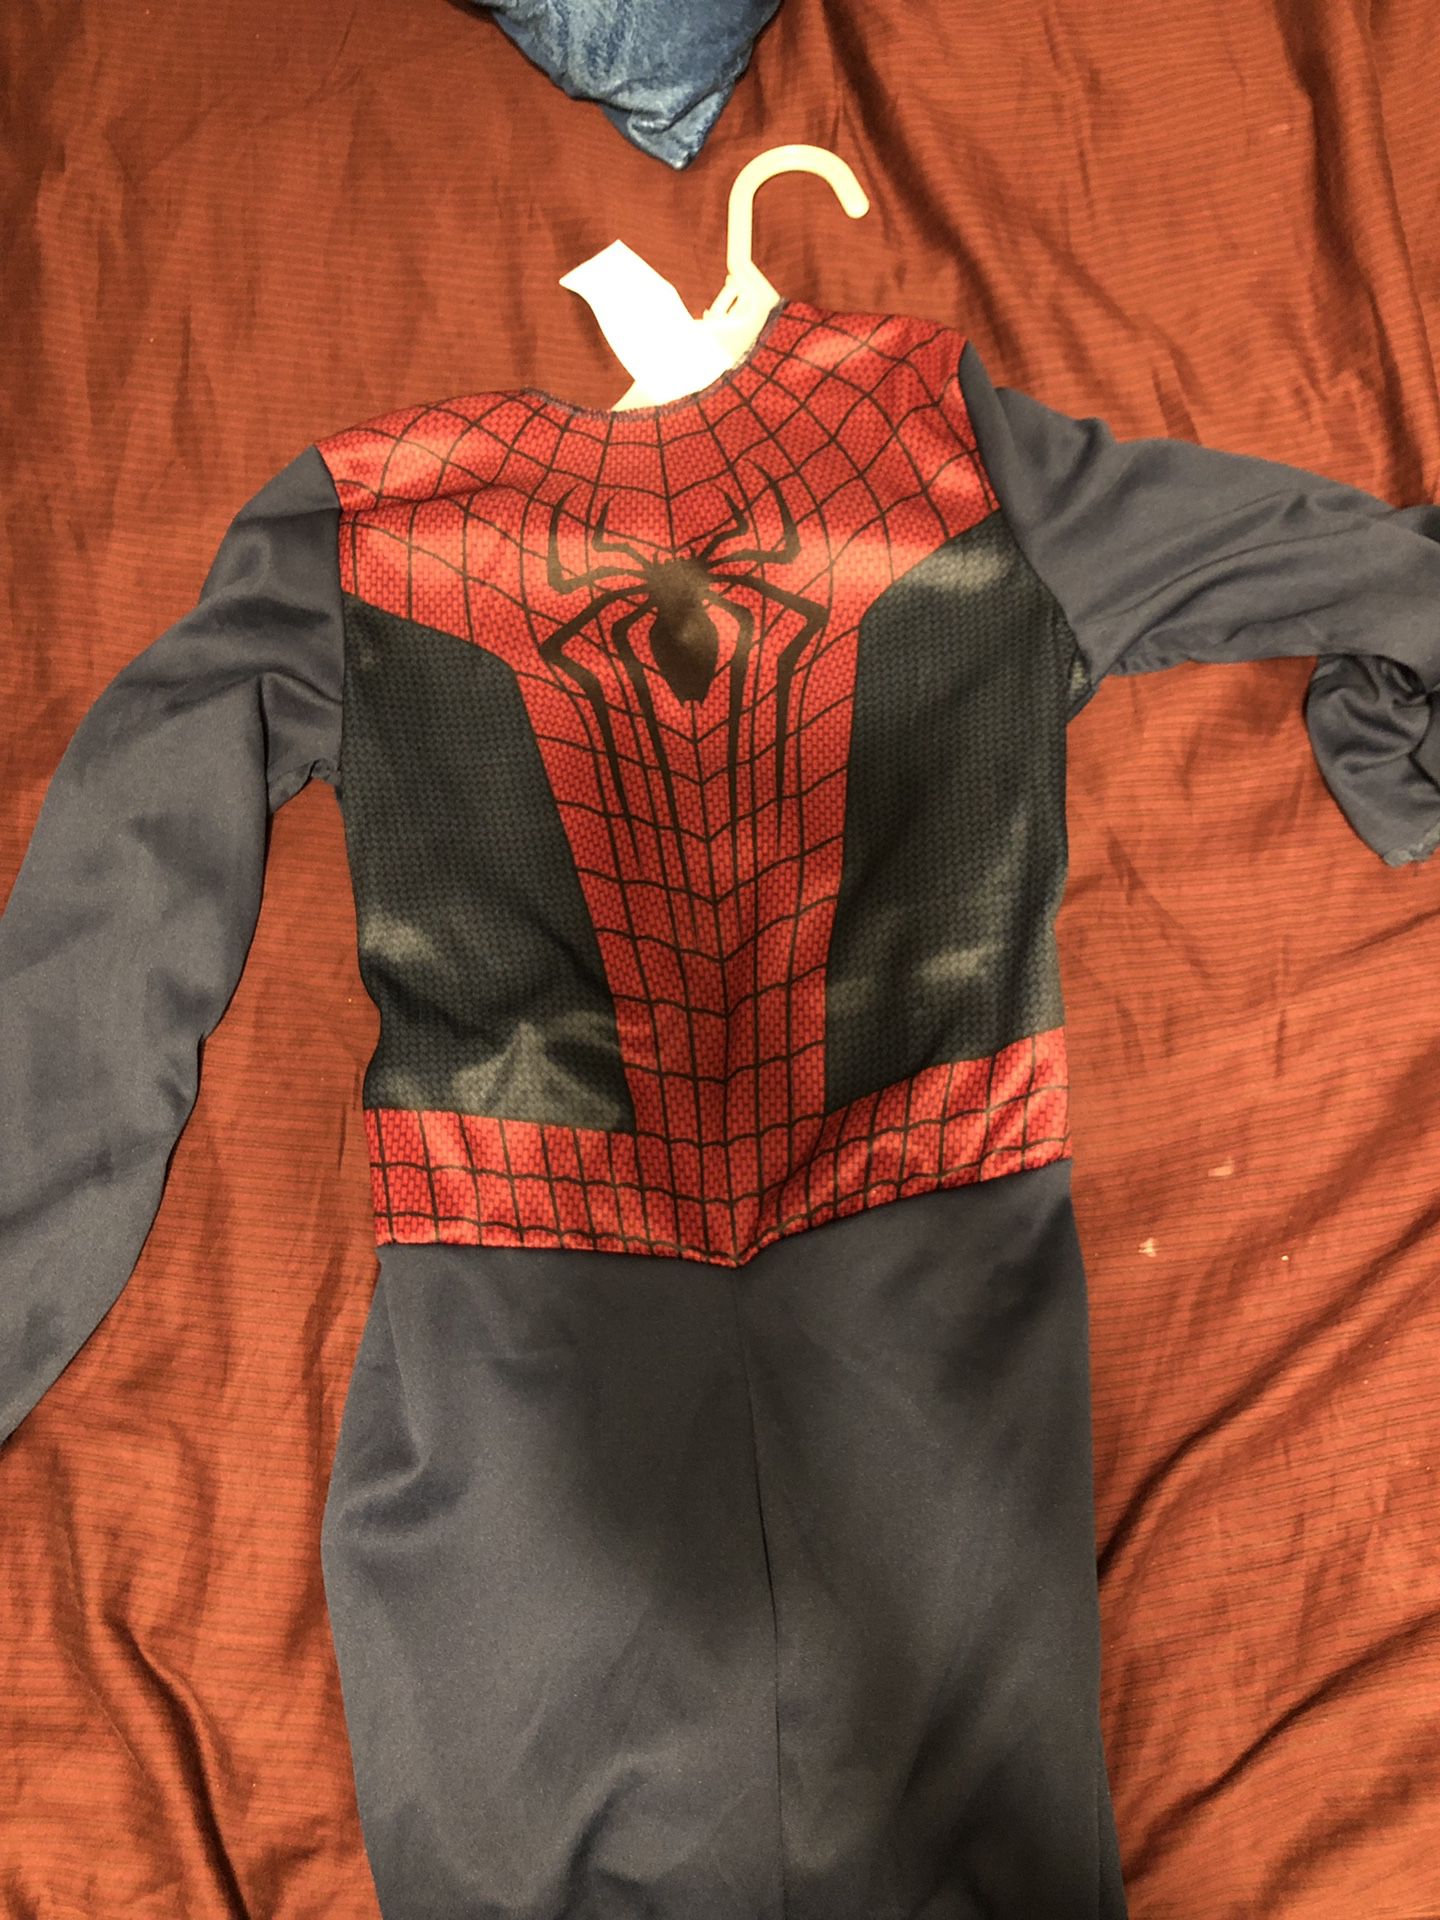 Spider-Man Halloween outfit onesie